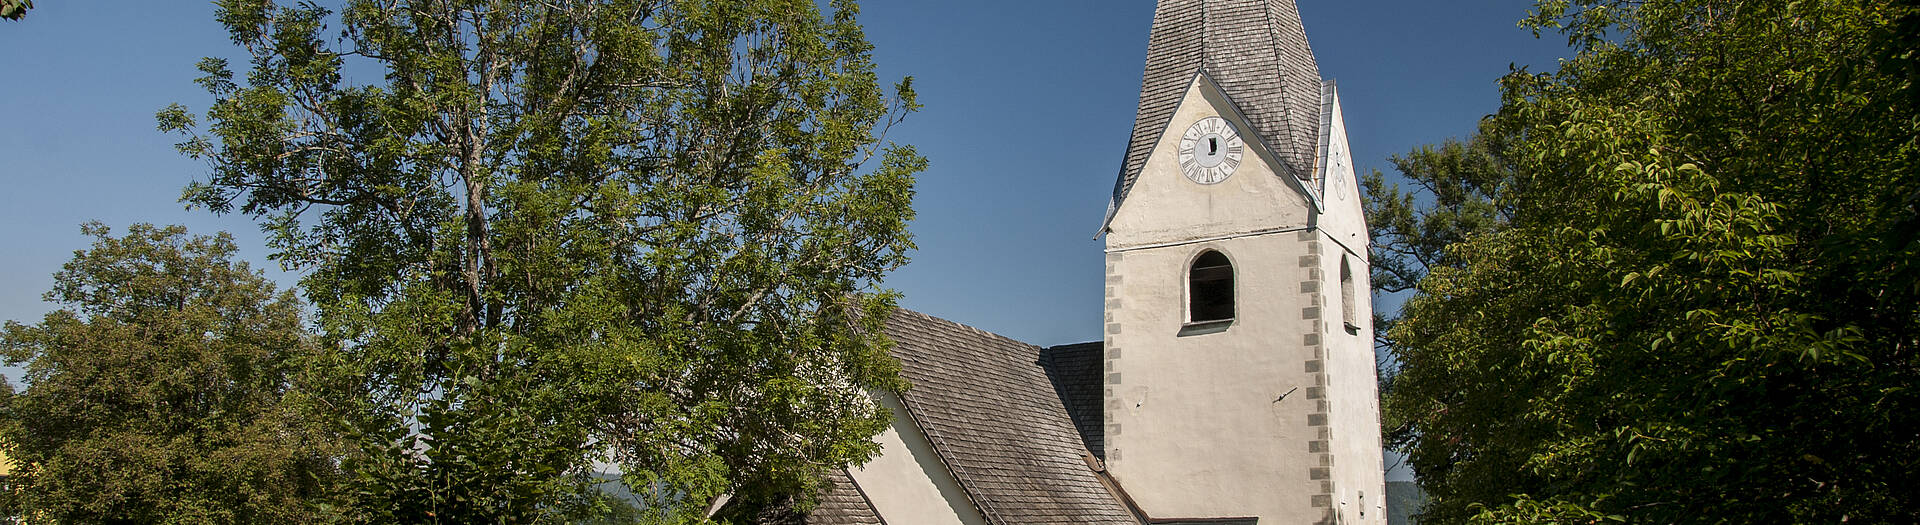 Grafenstein bei Klagenfurt am Wörthersee mit der Kirche St. Anna zu Saager